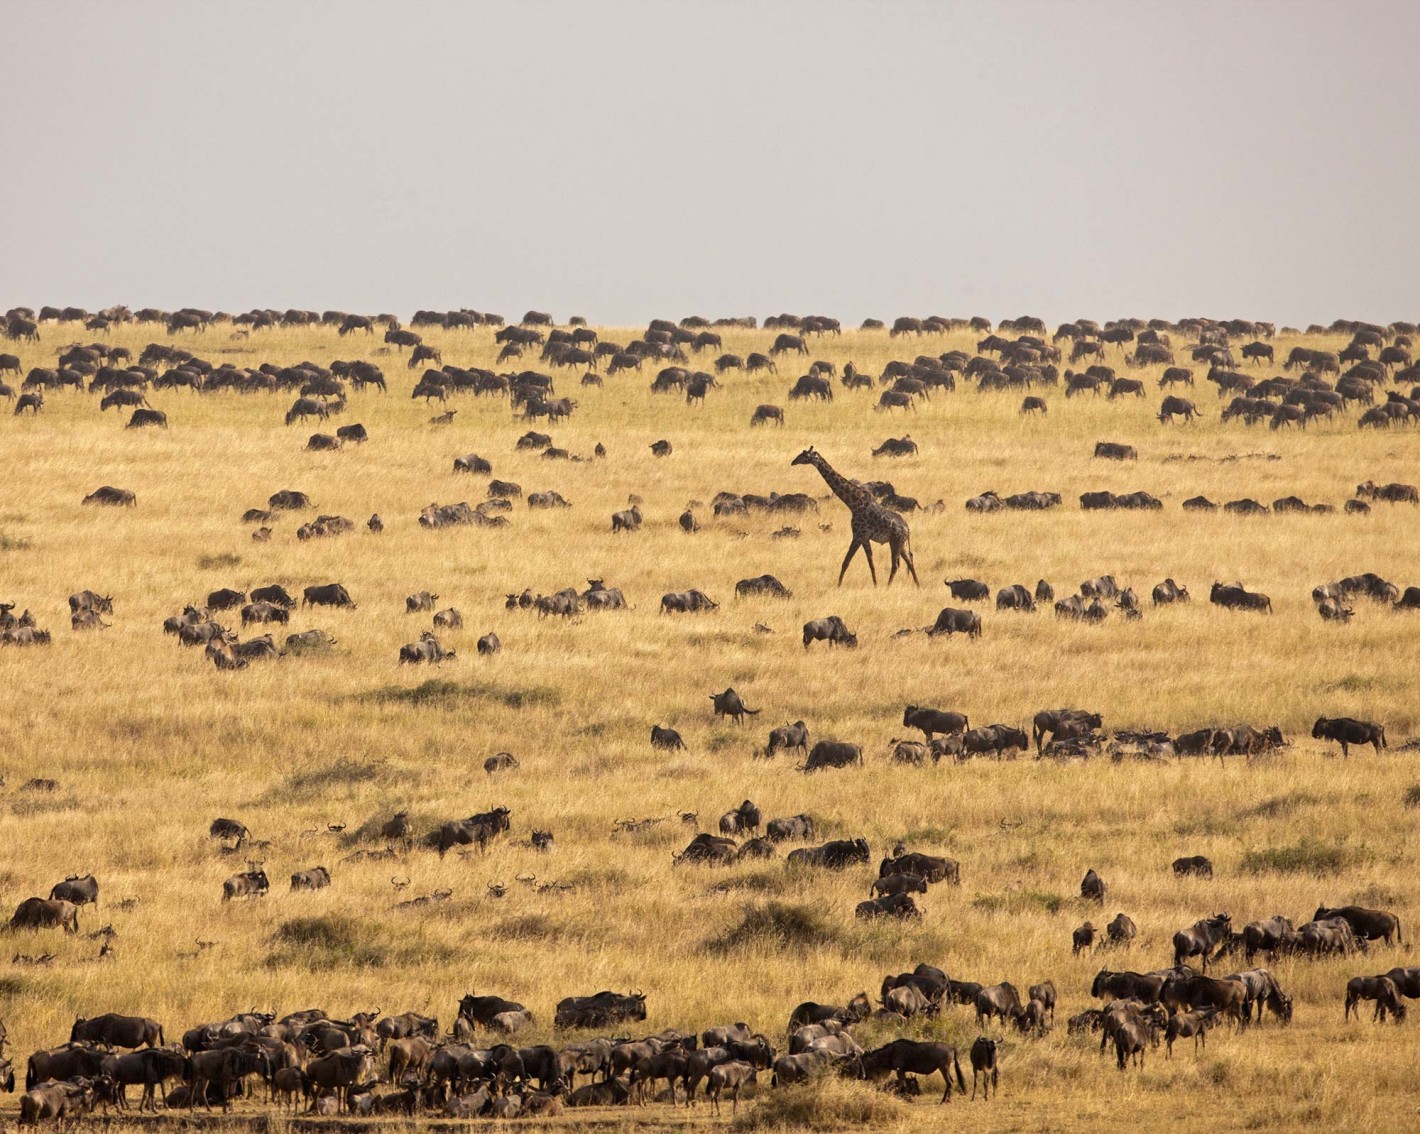 Serengeti giraffe and wildebeest